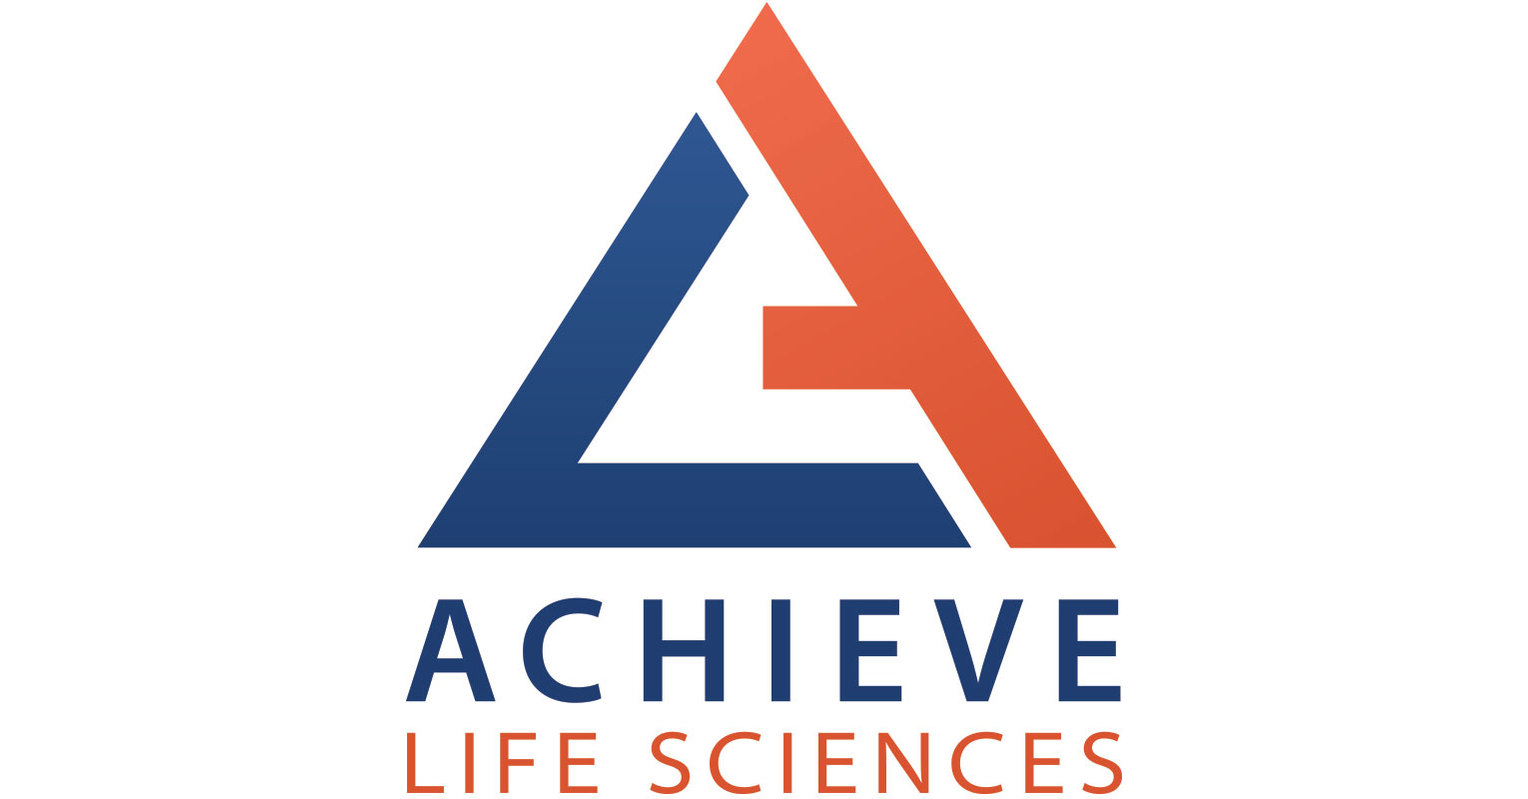 Achieve Life Sciences Announces Publication of